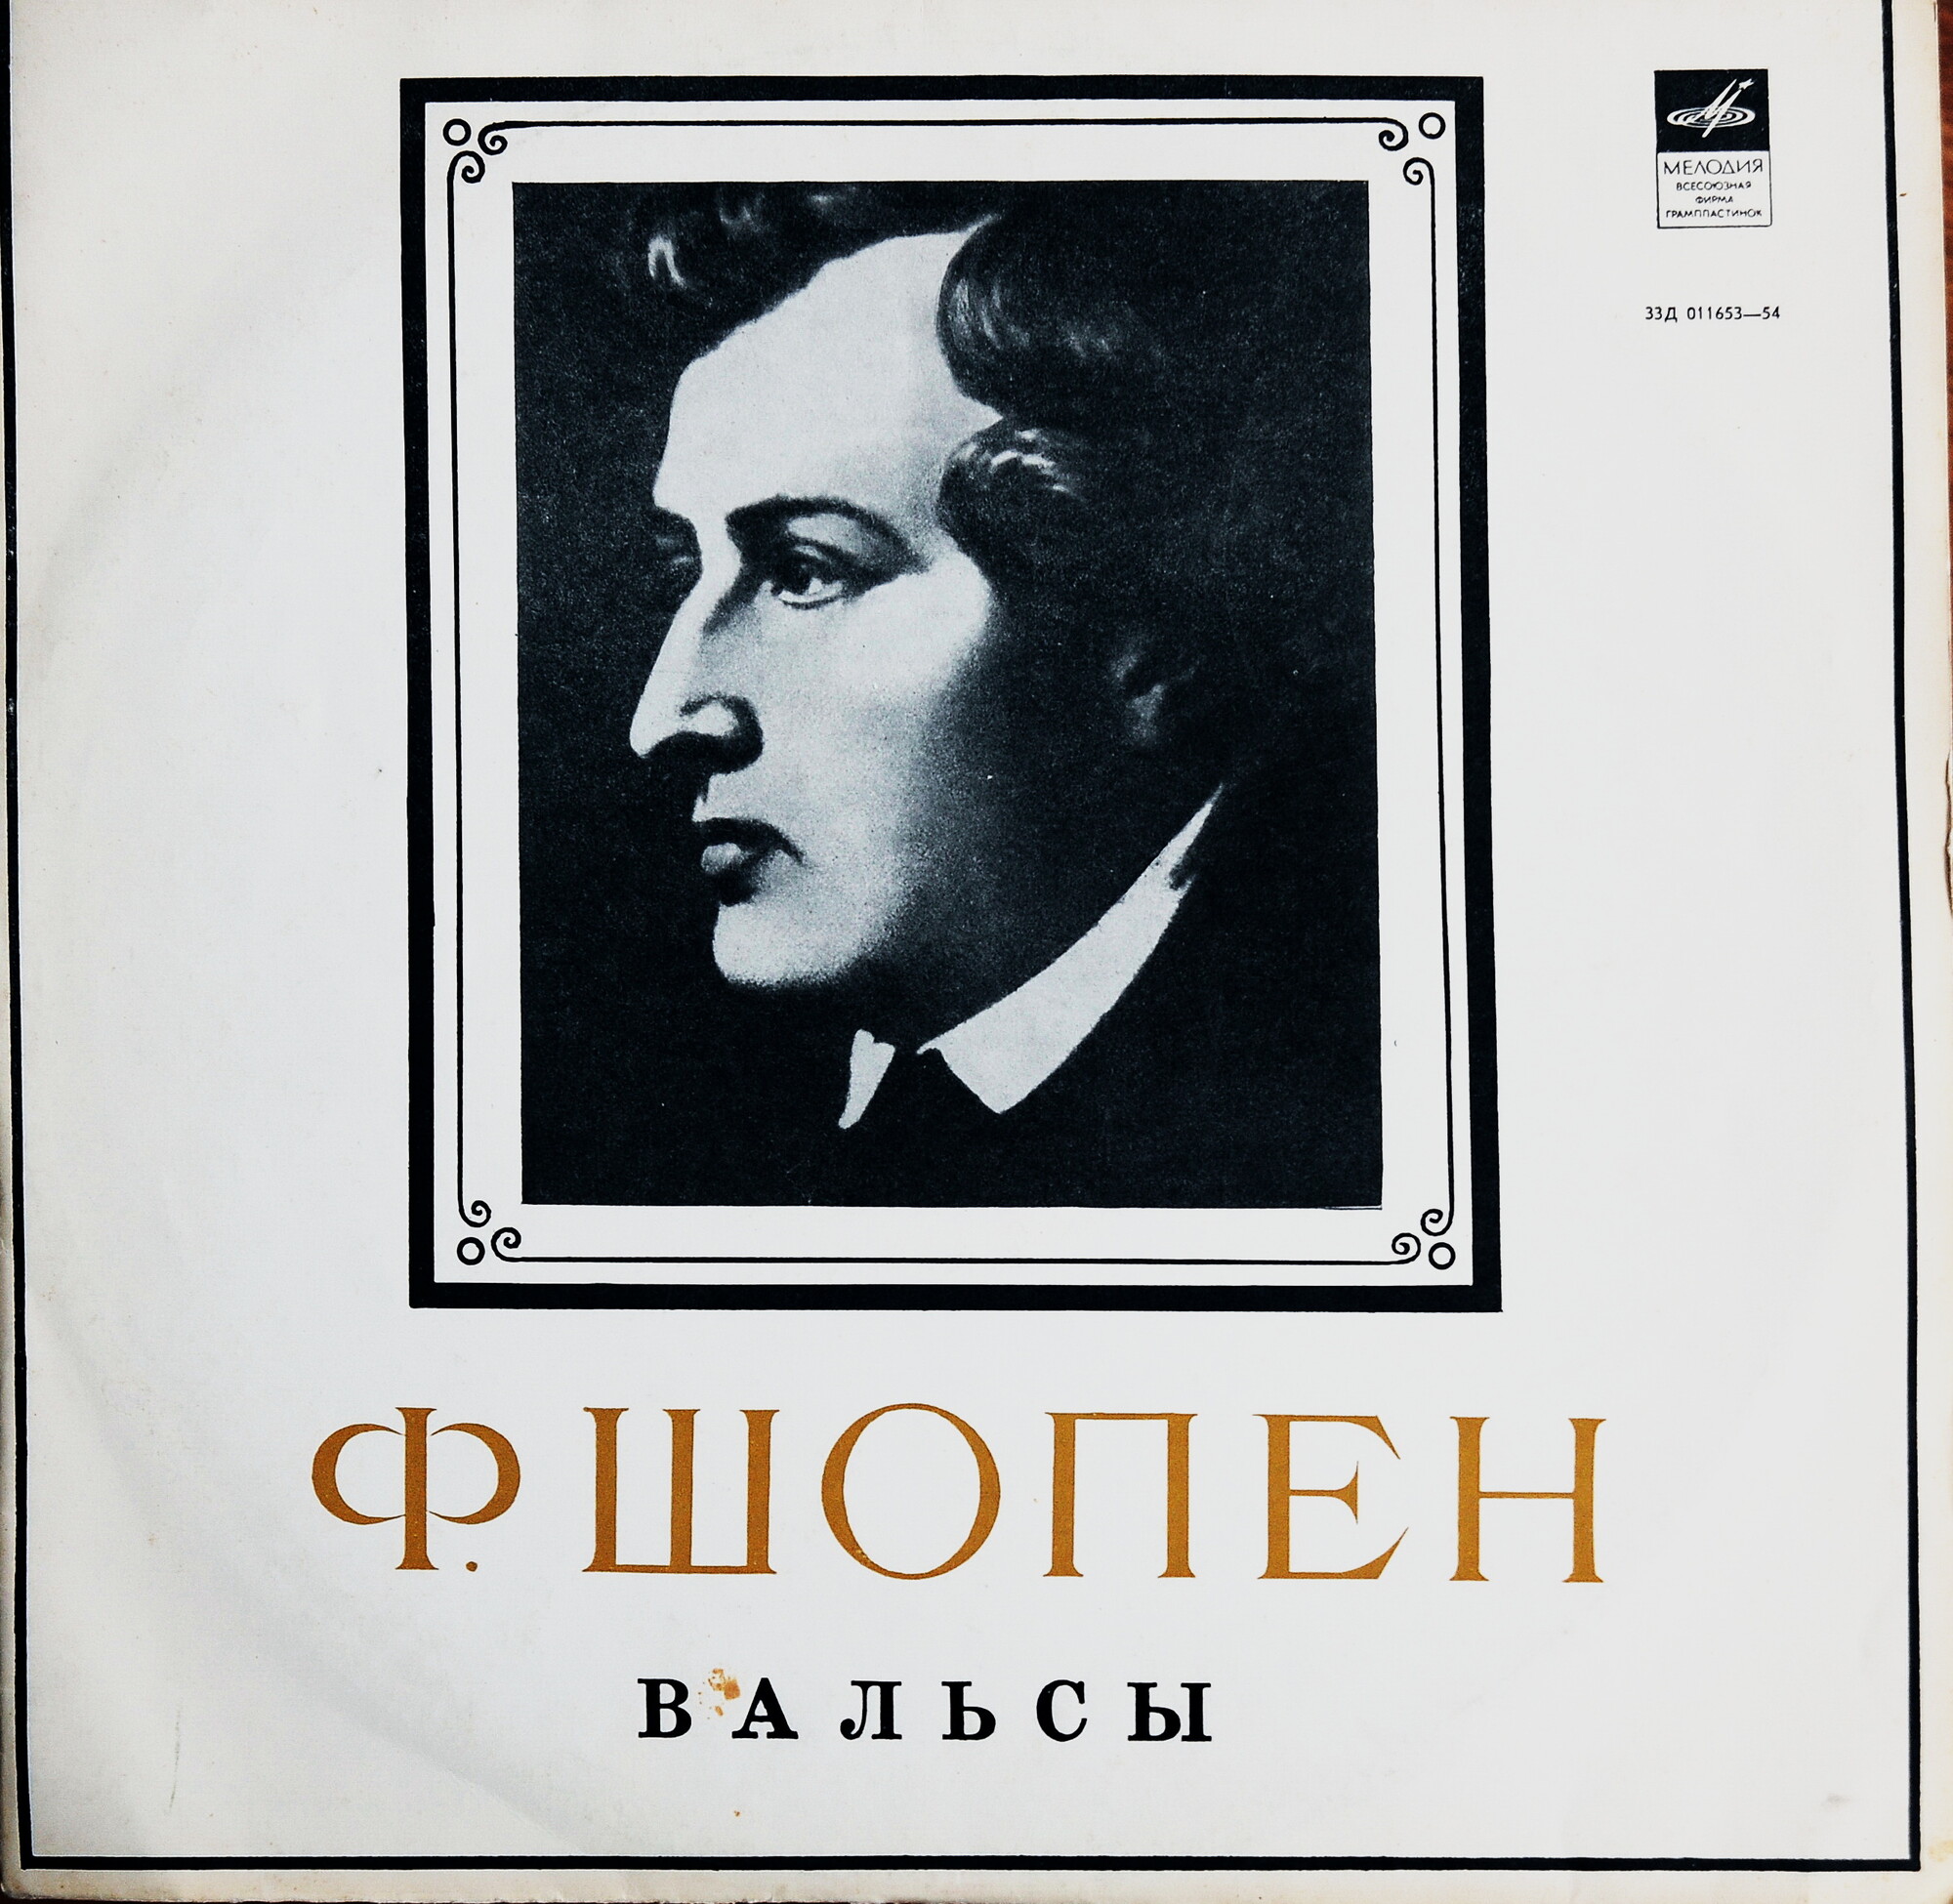 Ф. ШОПЕН (1810–1849): Вальсы (Б. Давидович, ф-но)